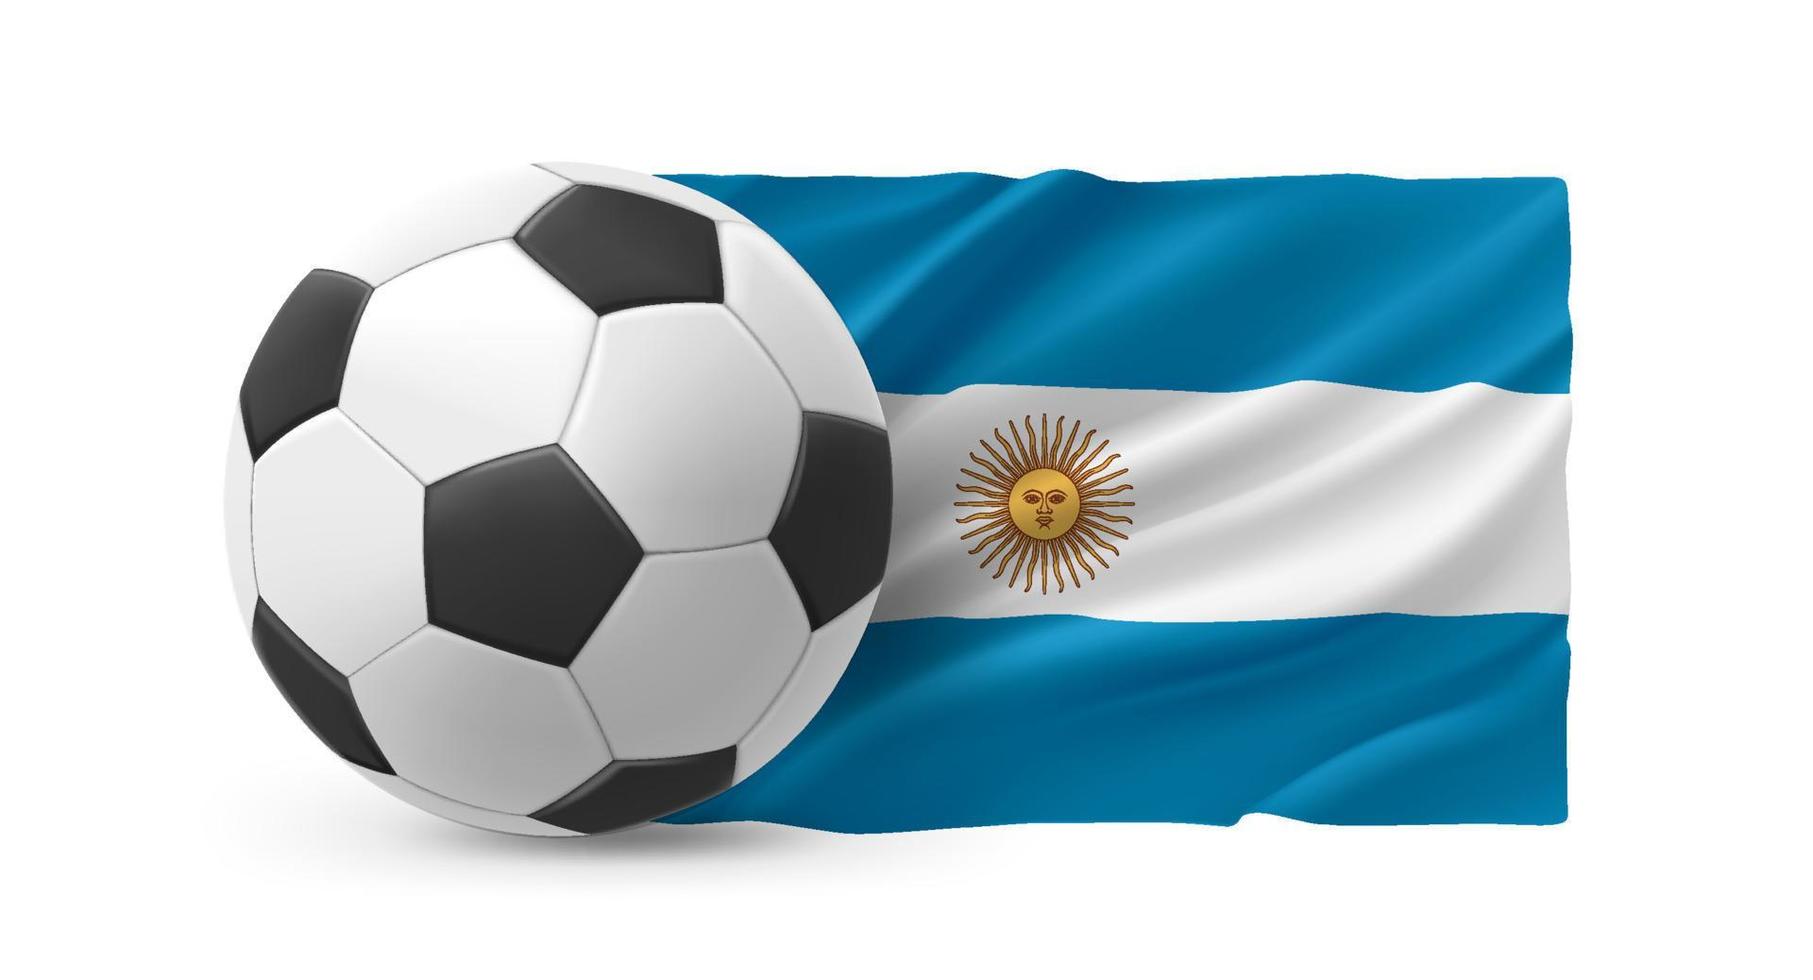 bola de futebol de couro realista com bandeira da argentina em fundo branco. ilustração em vetor 3D